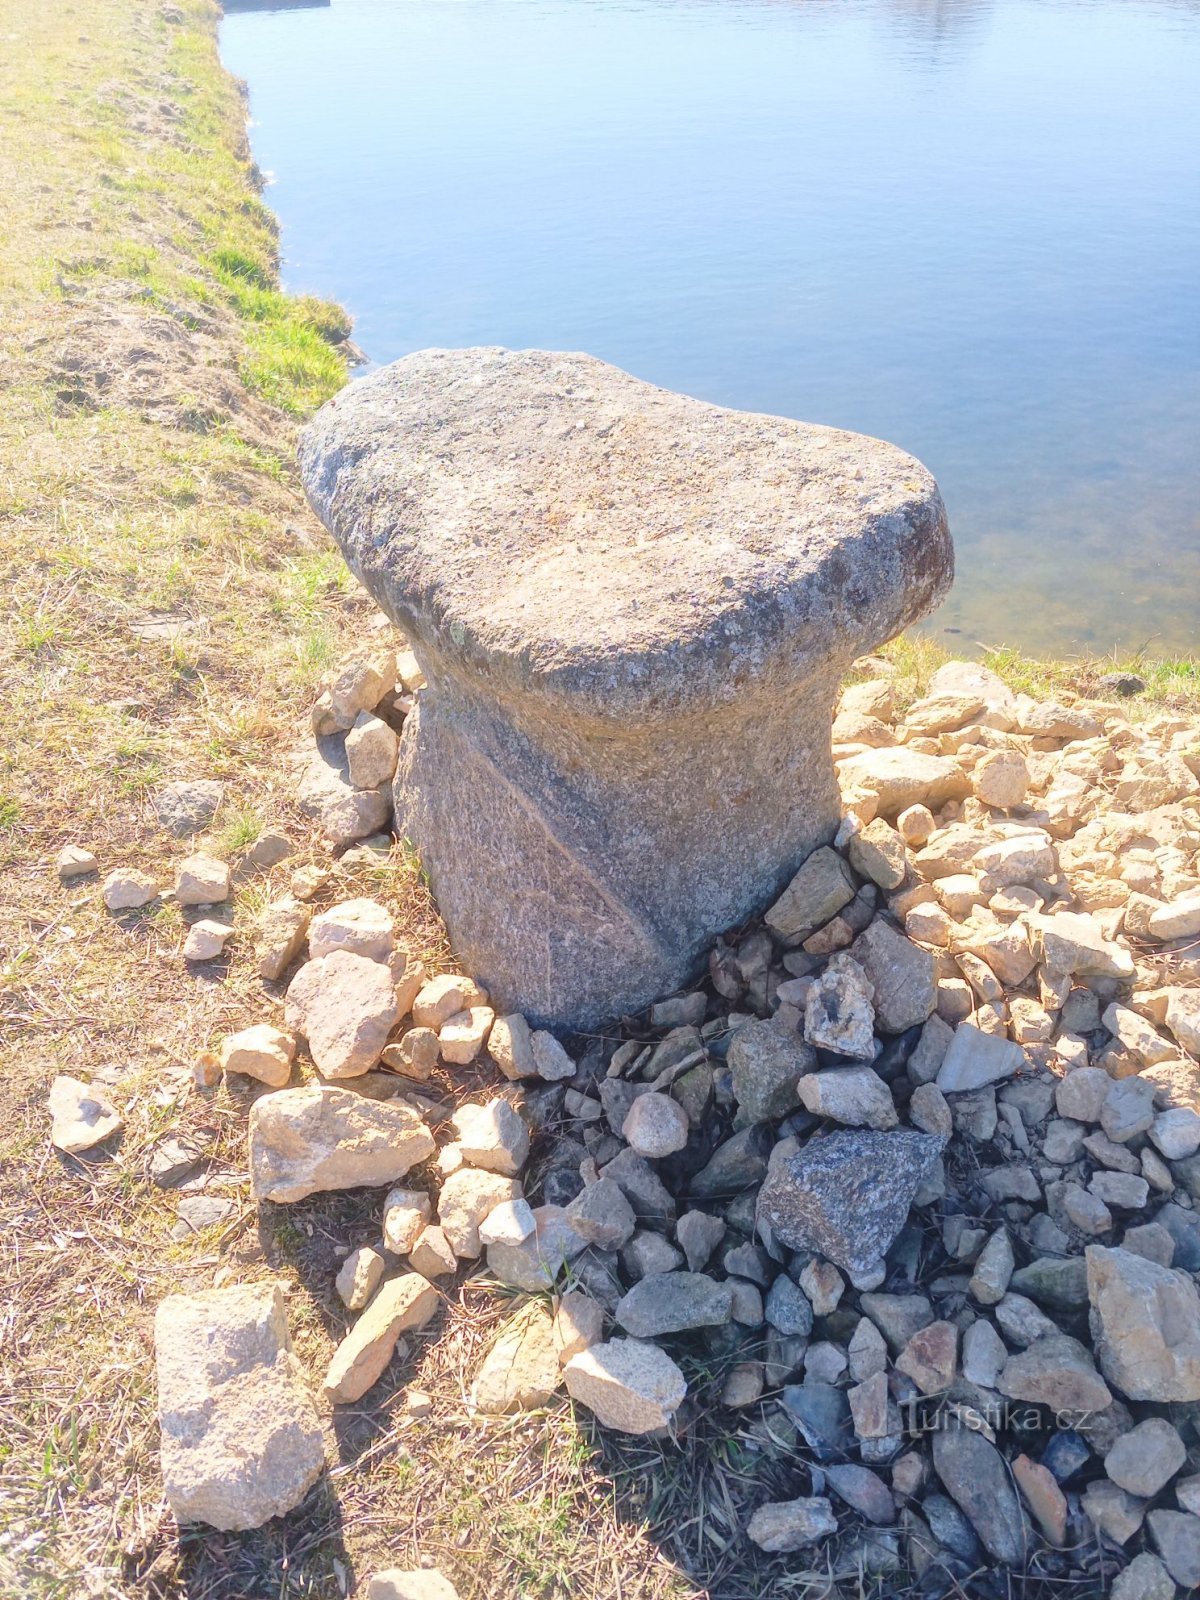 1. Mesa de pedra perto de Nový Dvorů pescada em 1991 no lago local, ND1